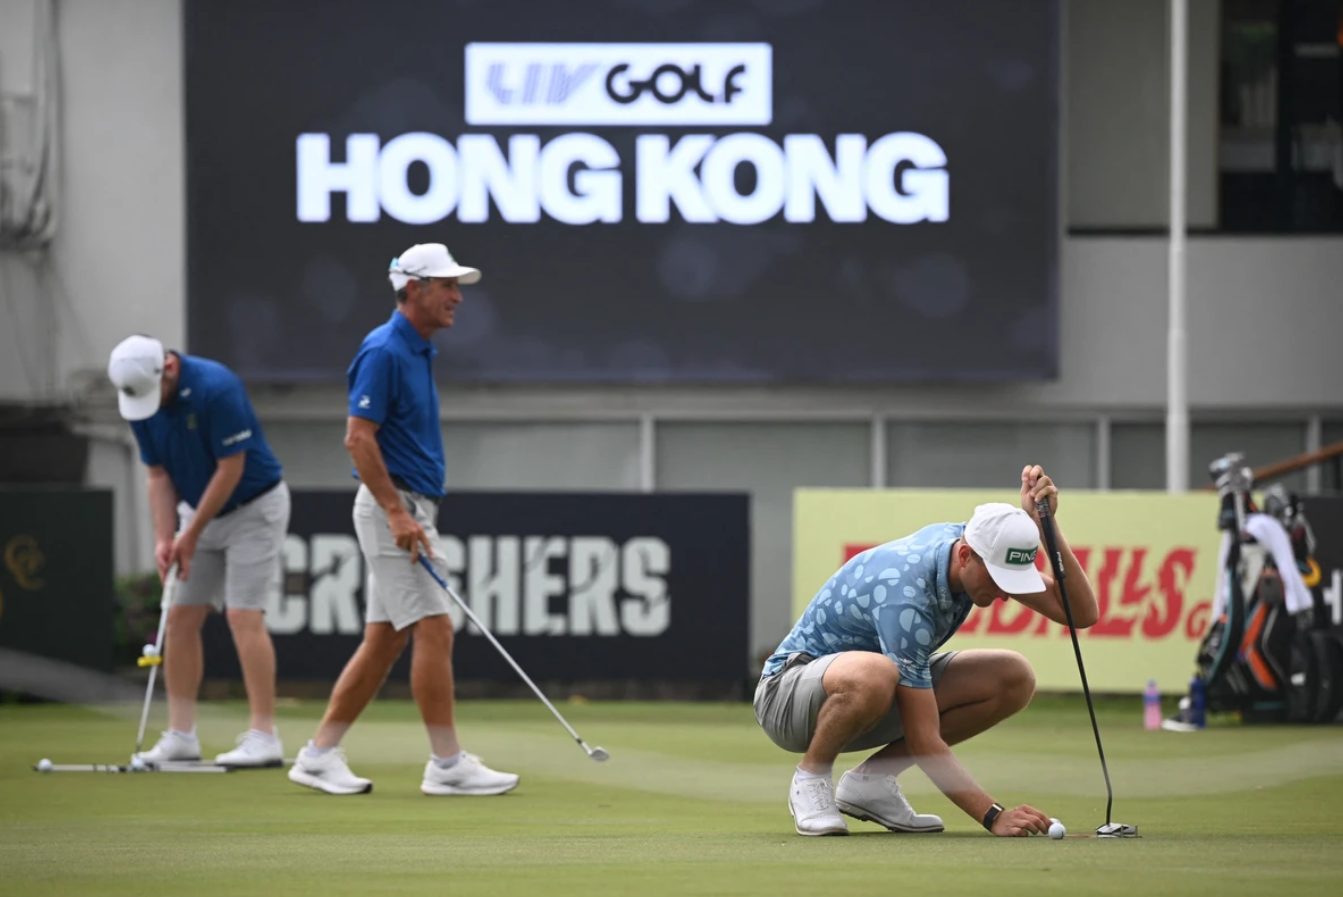 LIV Golf Hong Kong Predictions